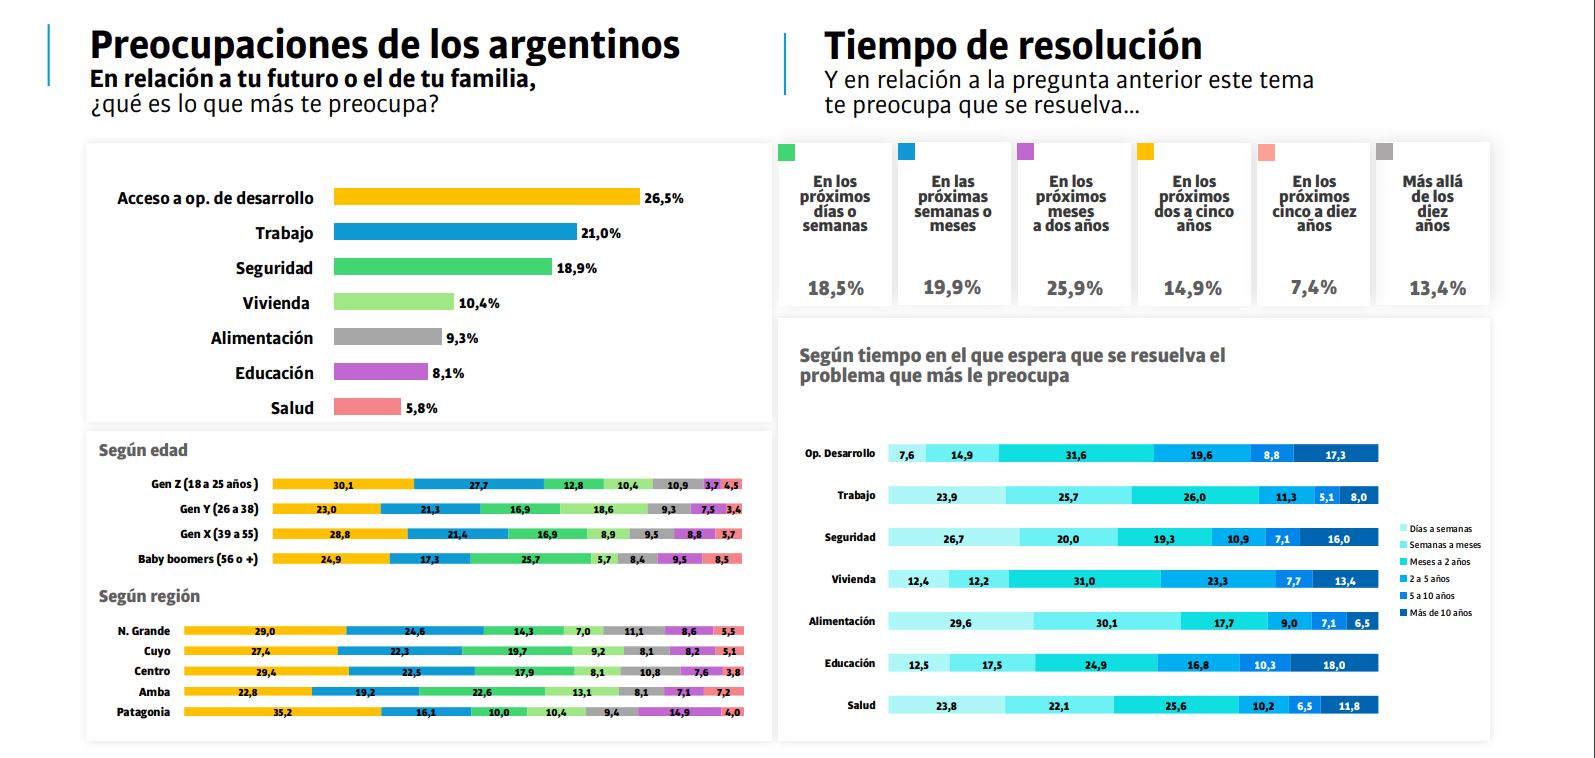 Las preocupaciones que más se destacan entre los argentinos